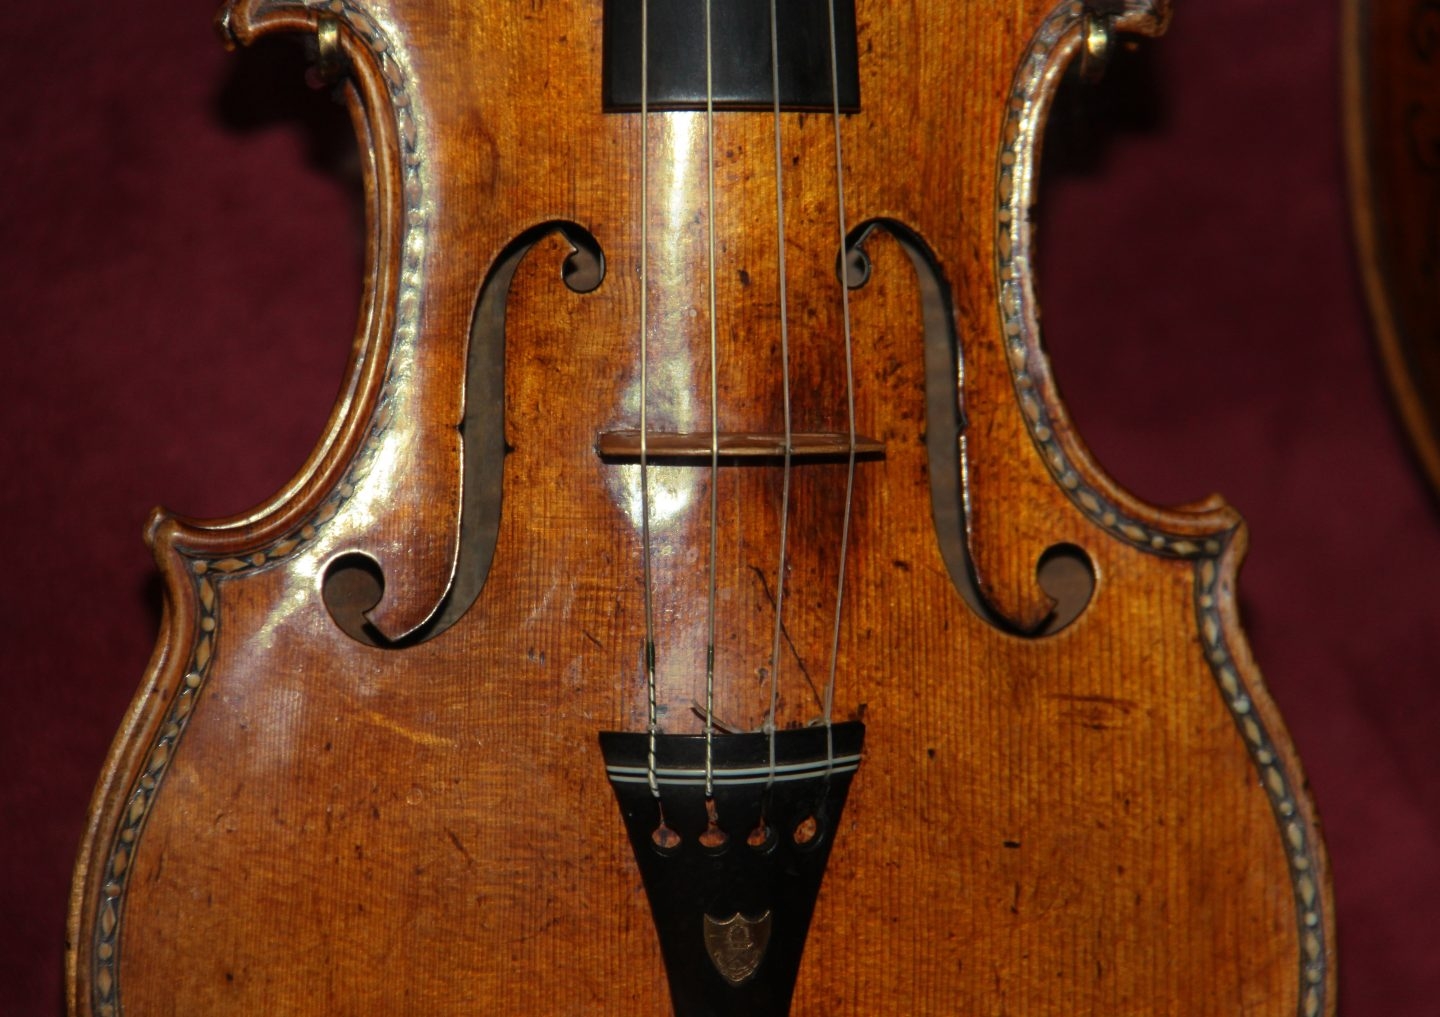 Desmontando los violines Stradivarius